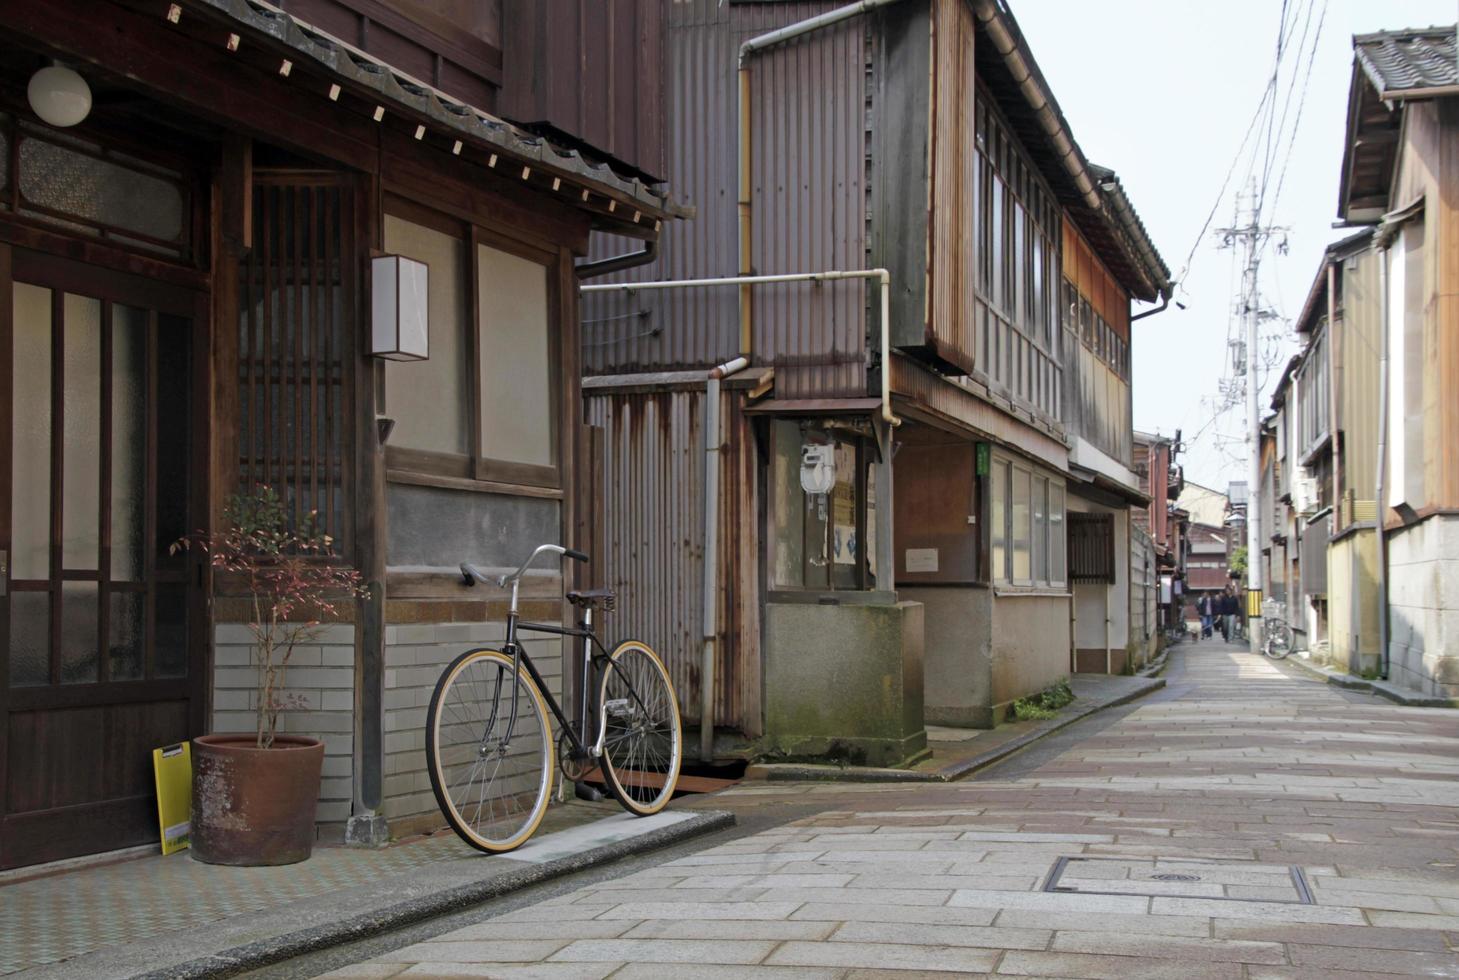 14 de junho de 2022 - kanazawa, japão - bicicleta em uma rua tranquila na cidade velha de kanazawa, japão foto